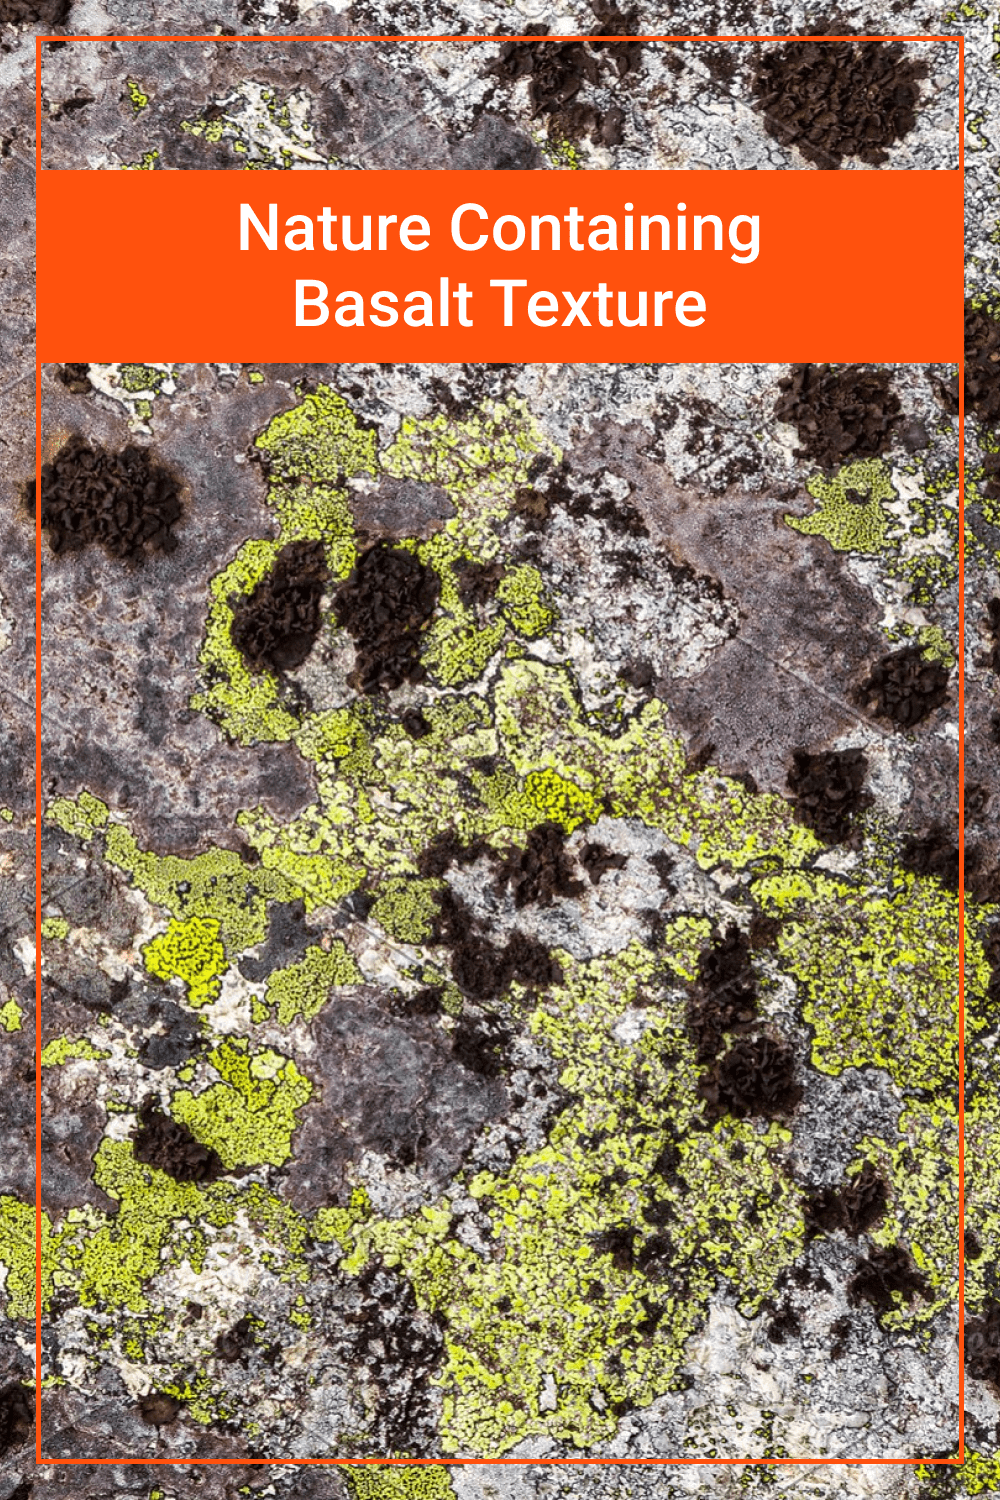 Nature Containing Basalt Texture.